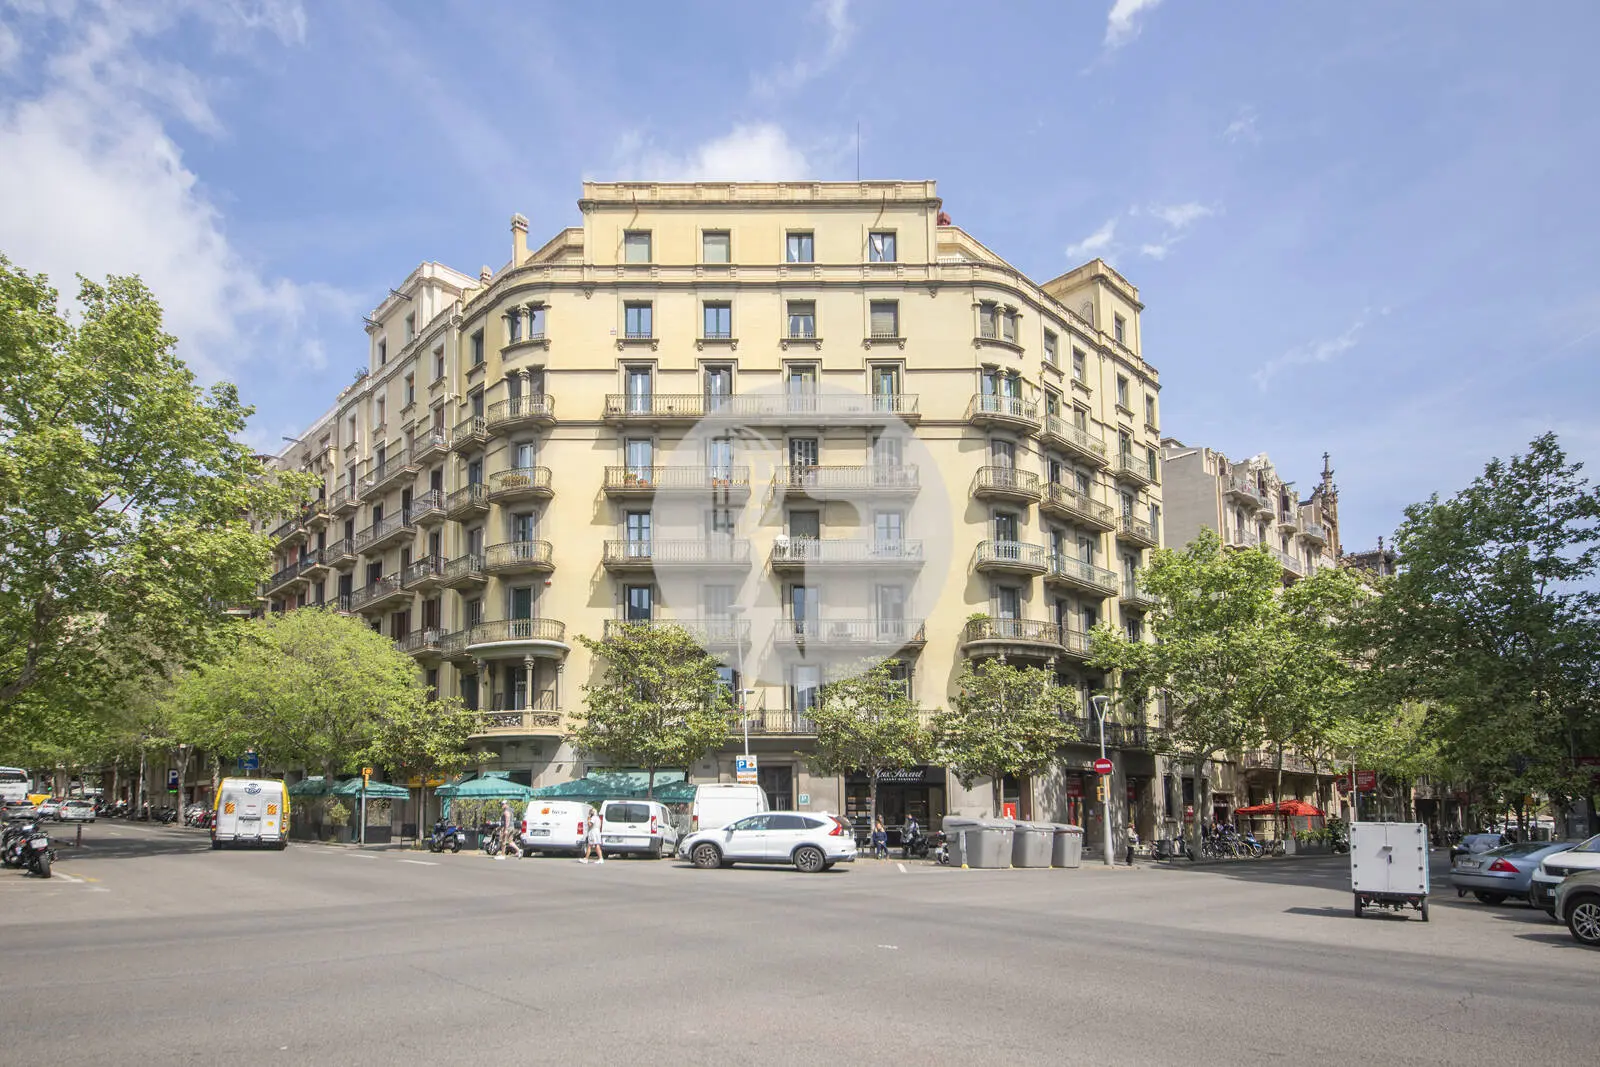 Excepcional piso en la c/ Roger de Llúria de Barcelona 55